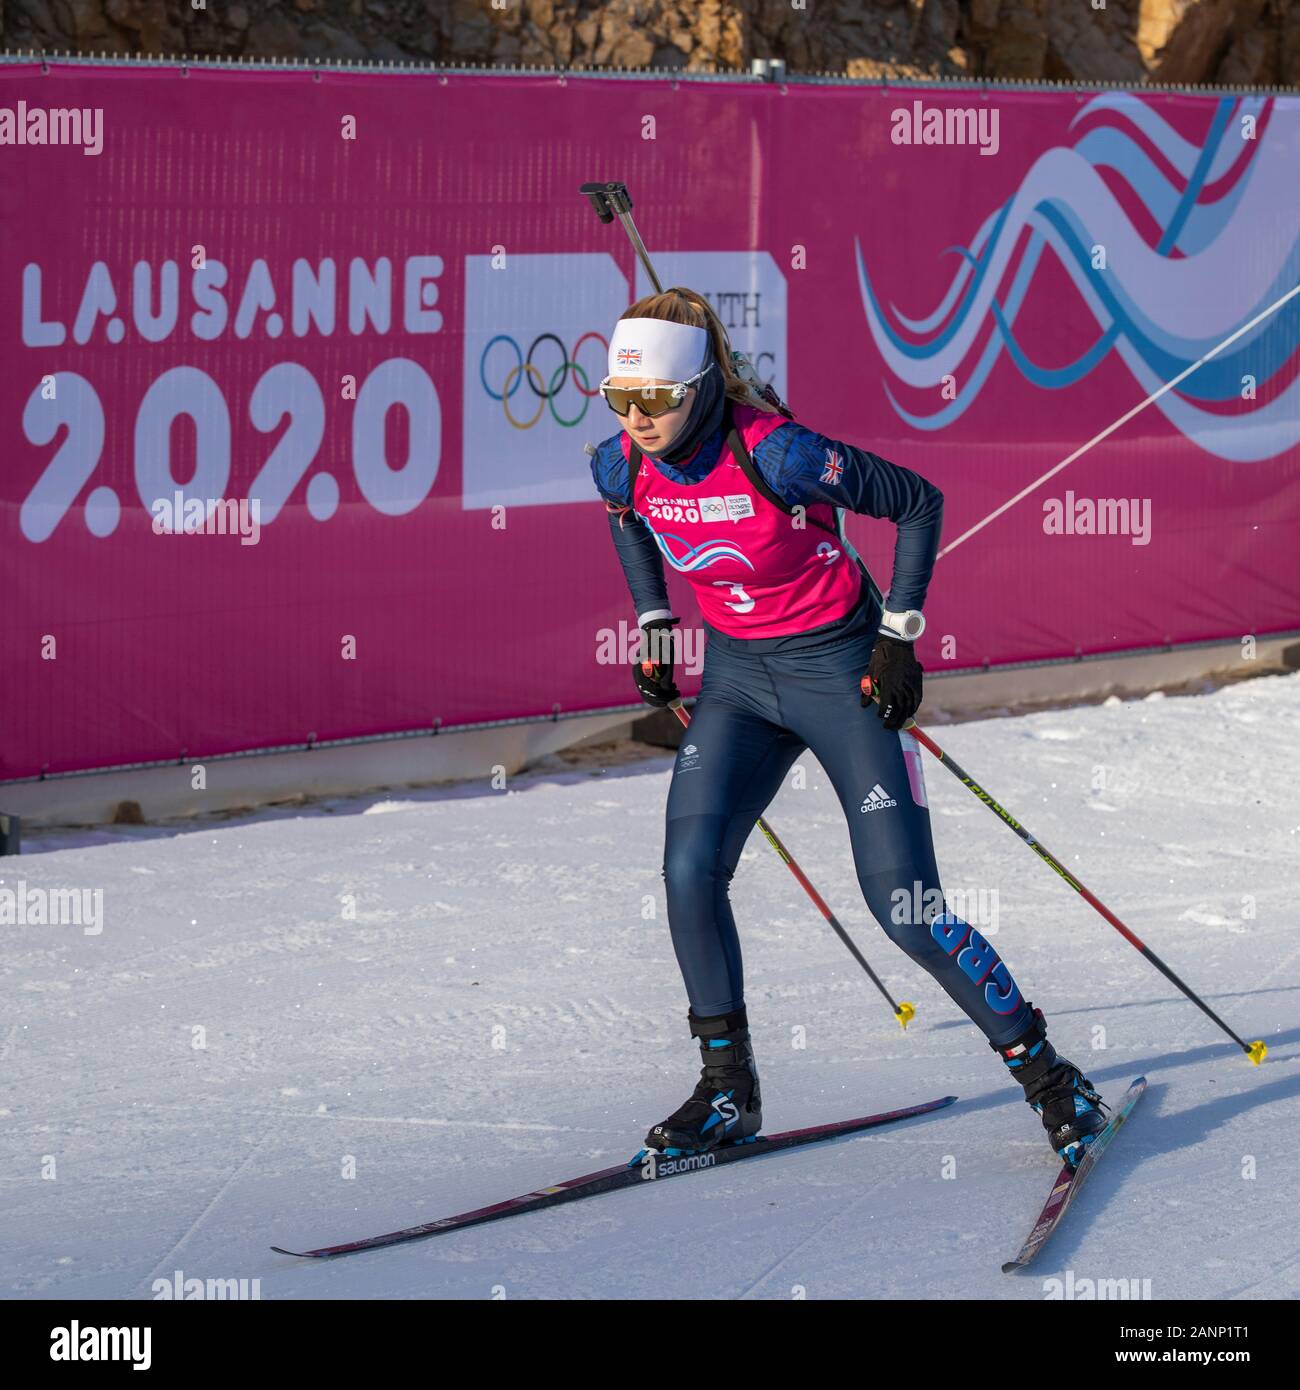 Shawna Pendry (17) del team GB compete nel biathlon individuale femminile 10km ai Giochi Olimpici della Gioventù di Losanna 2020 il 11th gennaio 2020 Foto Stock